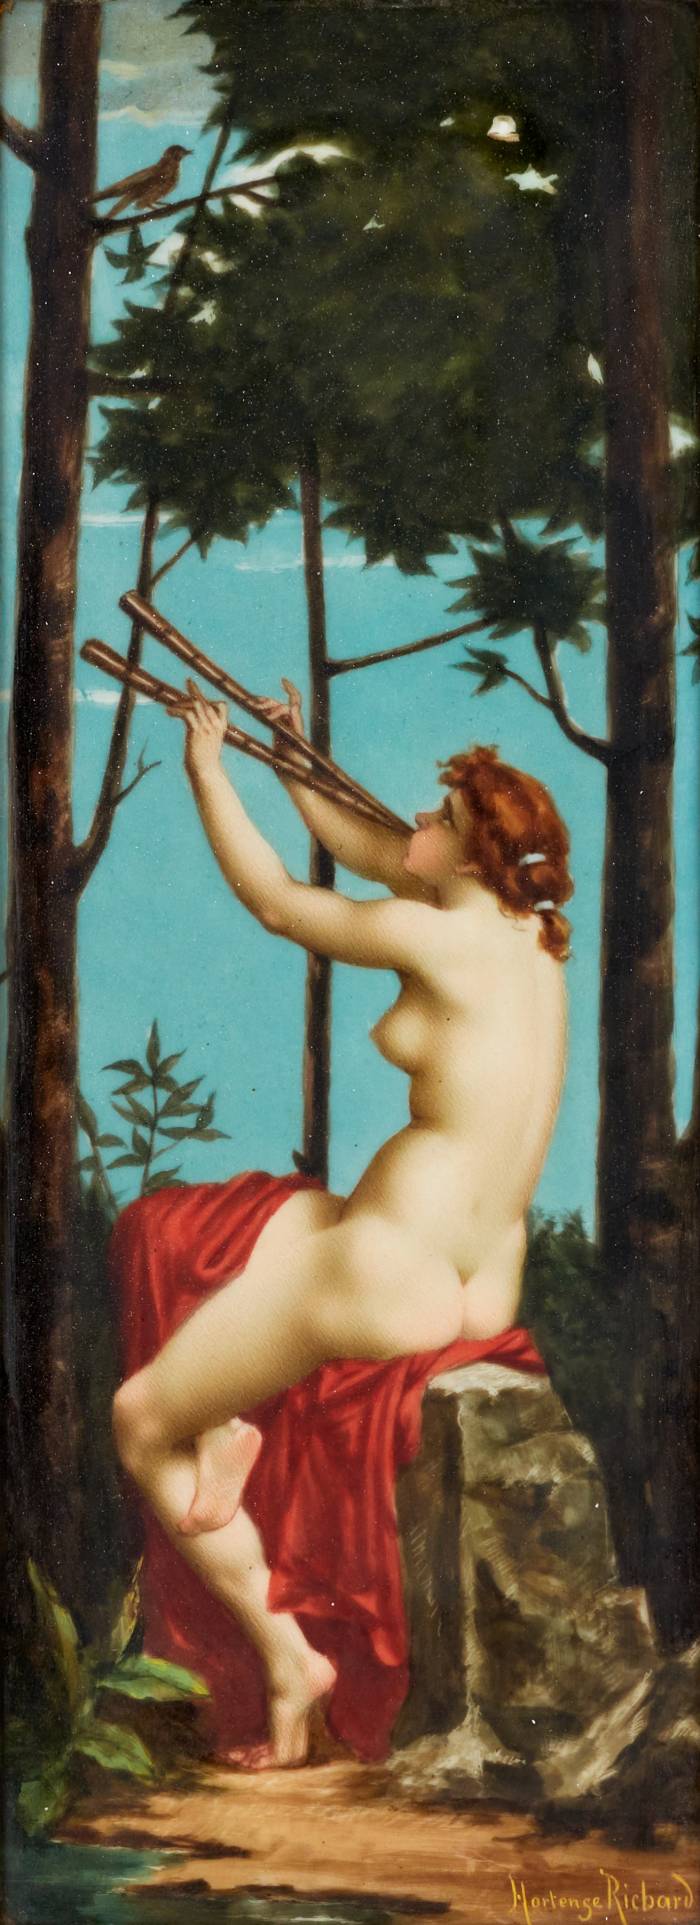 Живописный фарфоровый пласт. Hortense RICHARD (1847-1900) Заклинатель.